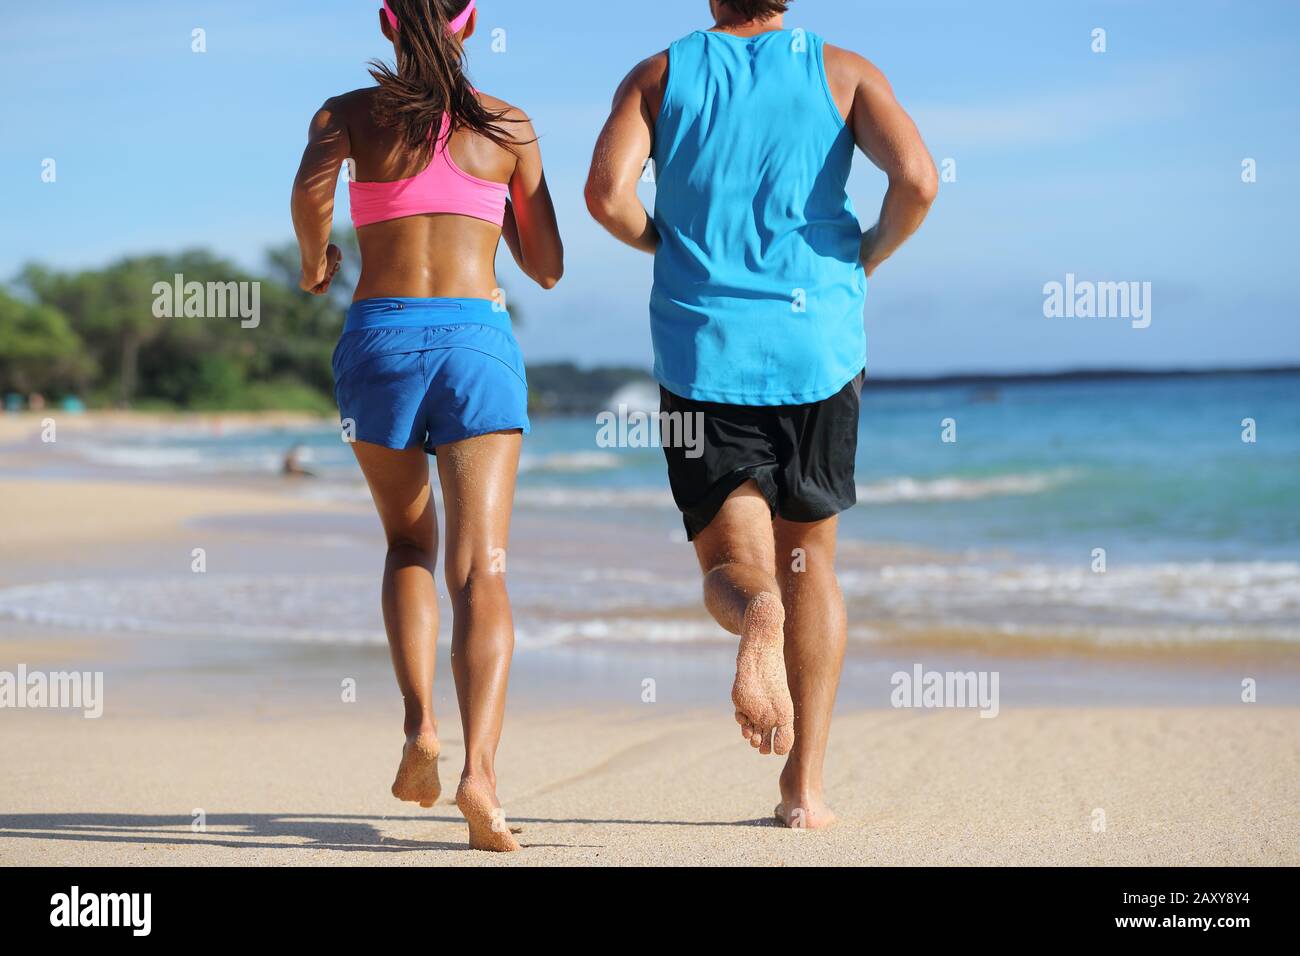 Zwei Athletinnen, die am Strand zusammenlaufen, koppeln. Leute von hinten joggen  barfuß auf Sand am tropischen Reiseziel. Unterkörper, Beine, Füße  Stockfotografie - Alamy